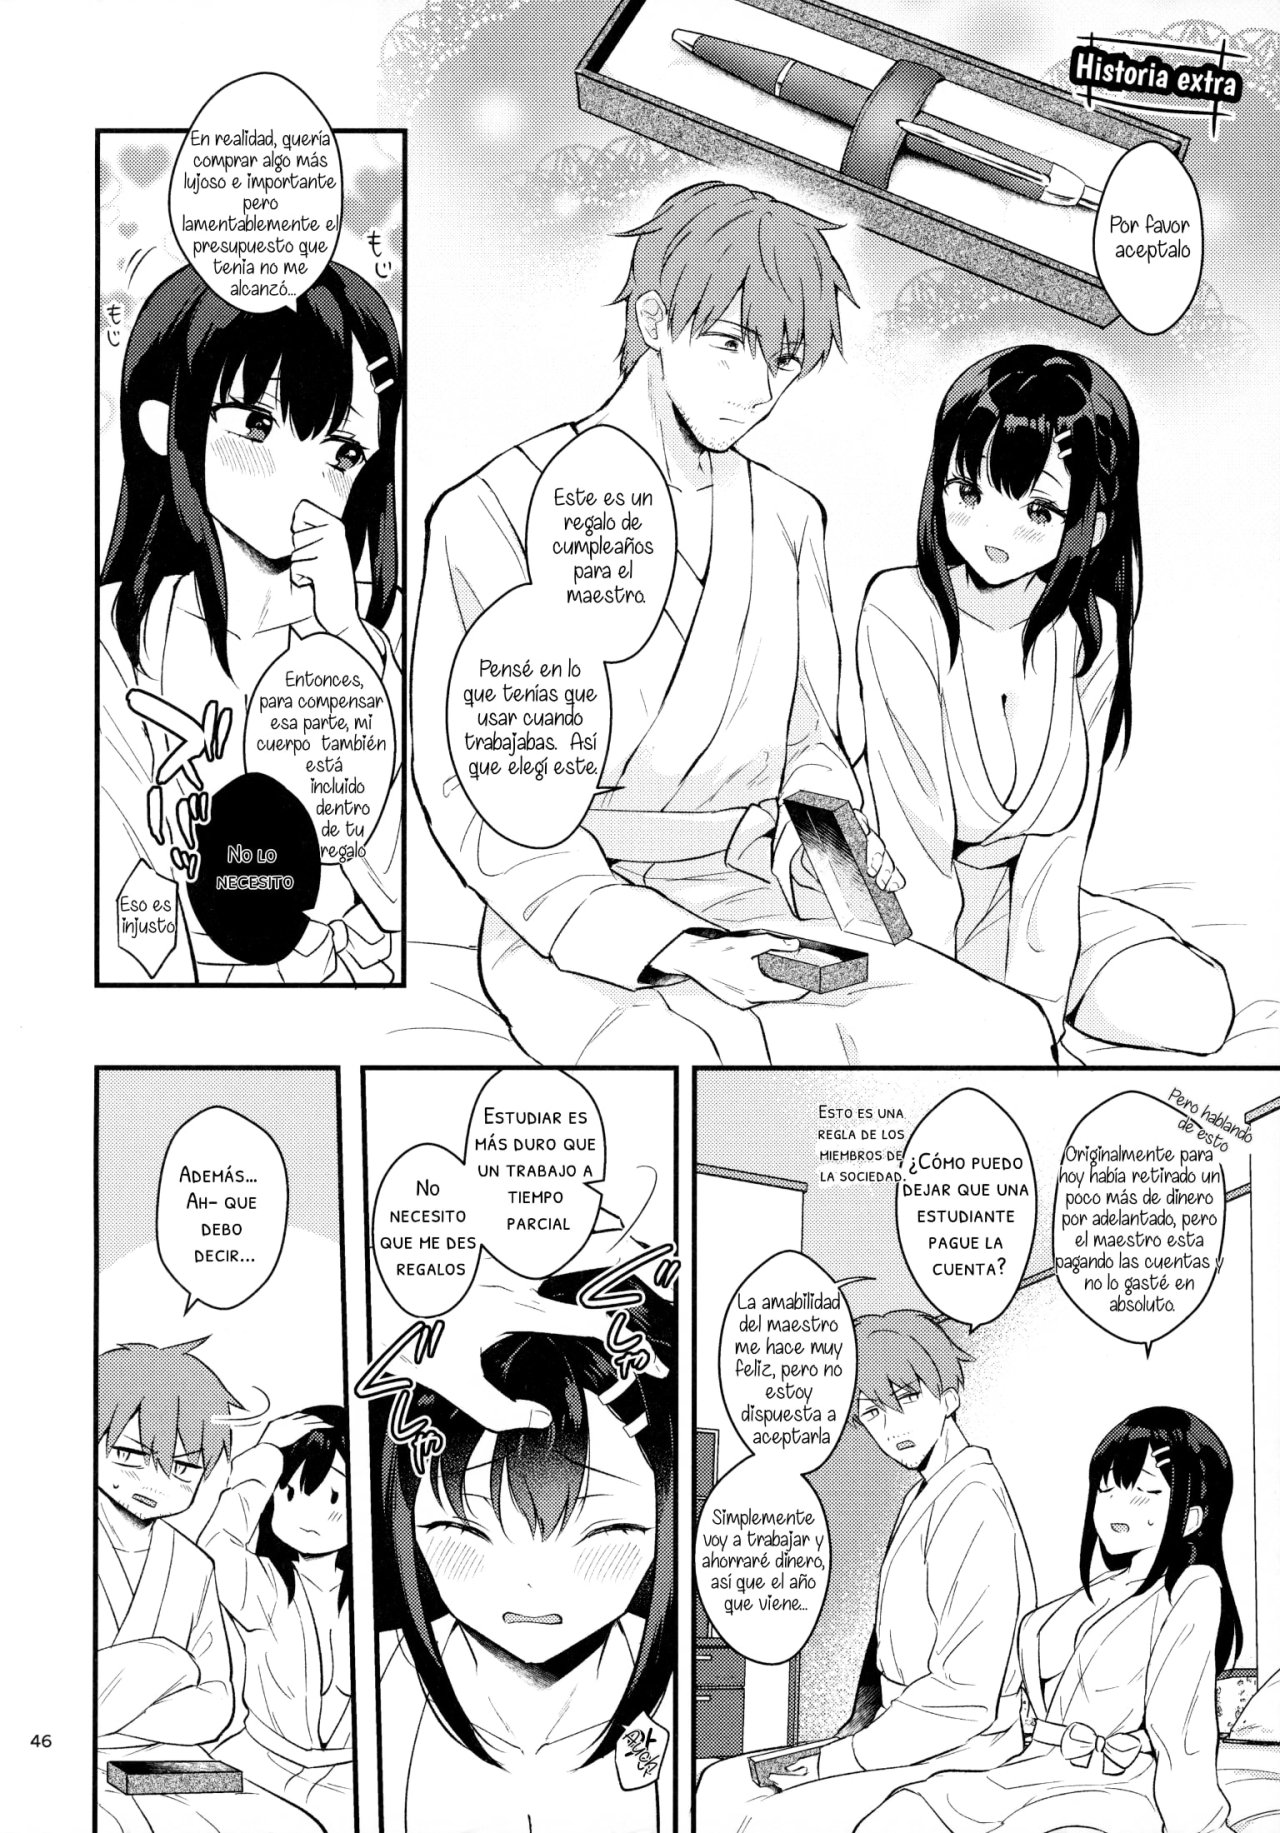 Sunshower-JK Miyako no Valentine Manga 3 - 44